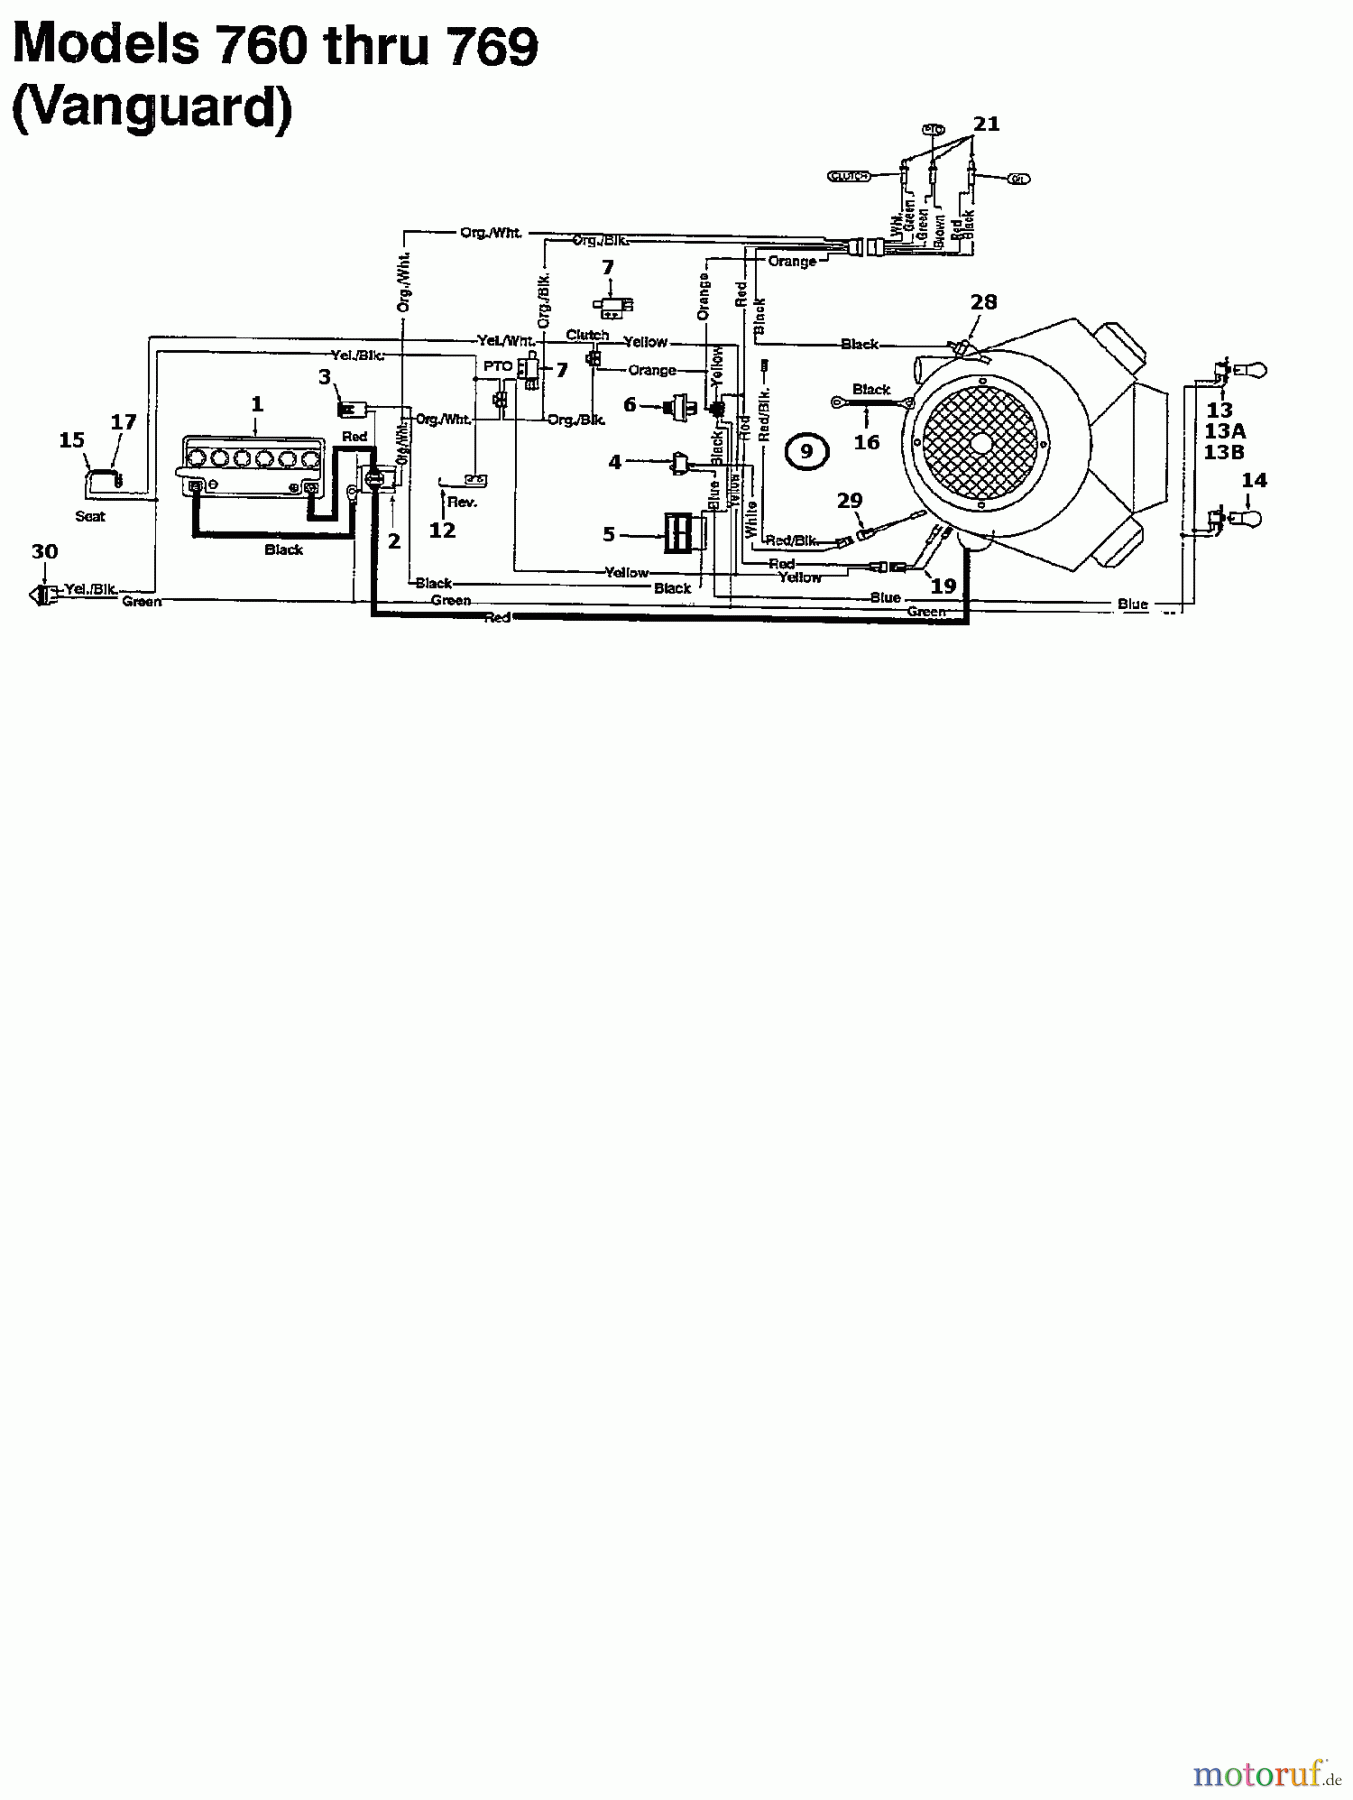  MTD Lawn tractors 125/102 134K765N678  (1994) Wiring diagram Vanguard